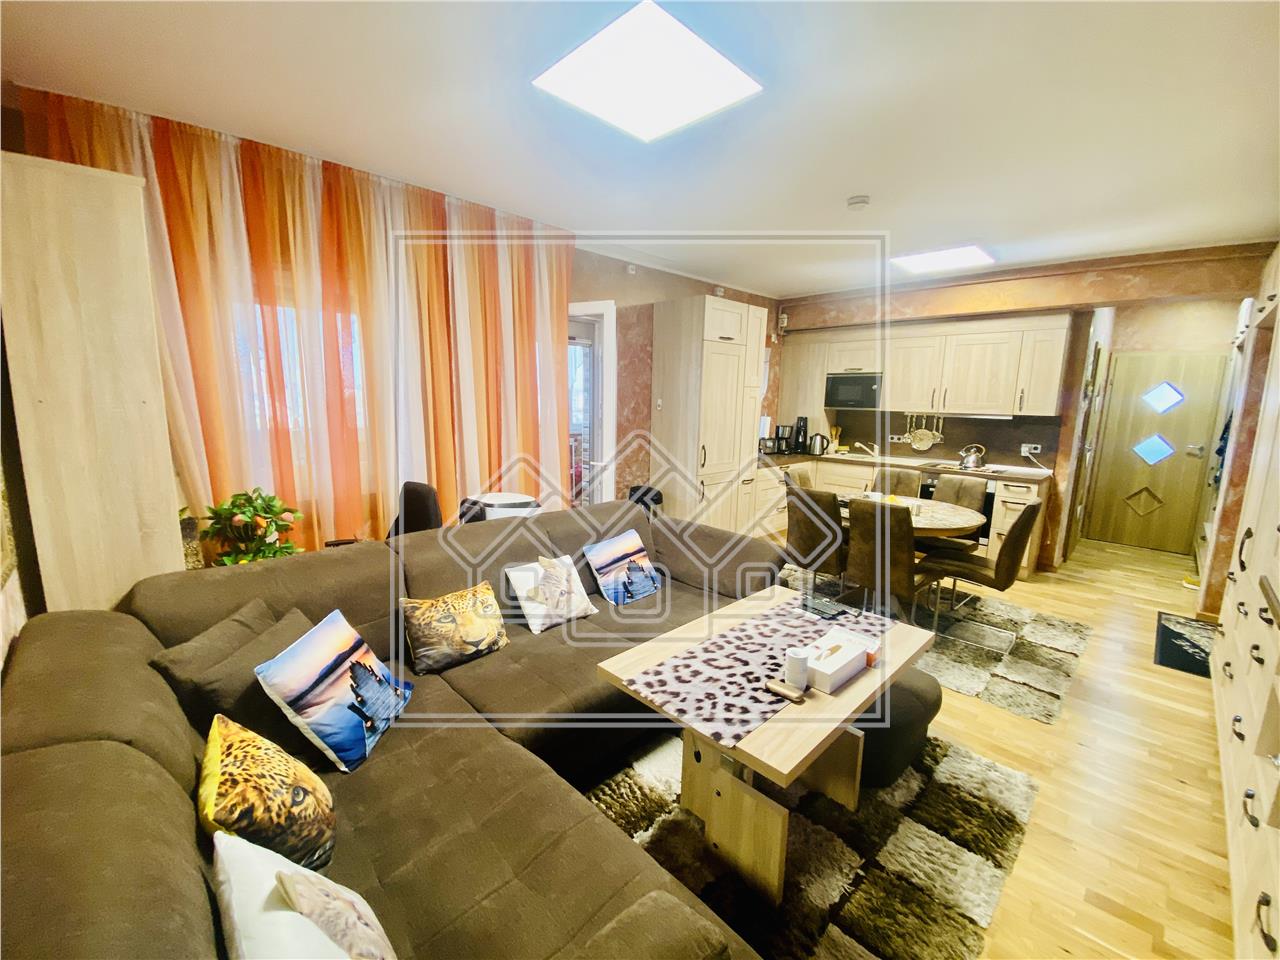 Wohnung zu verkaufen in Sibiu - 2 Zimmer und Balkon - modern m?bliert